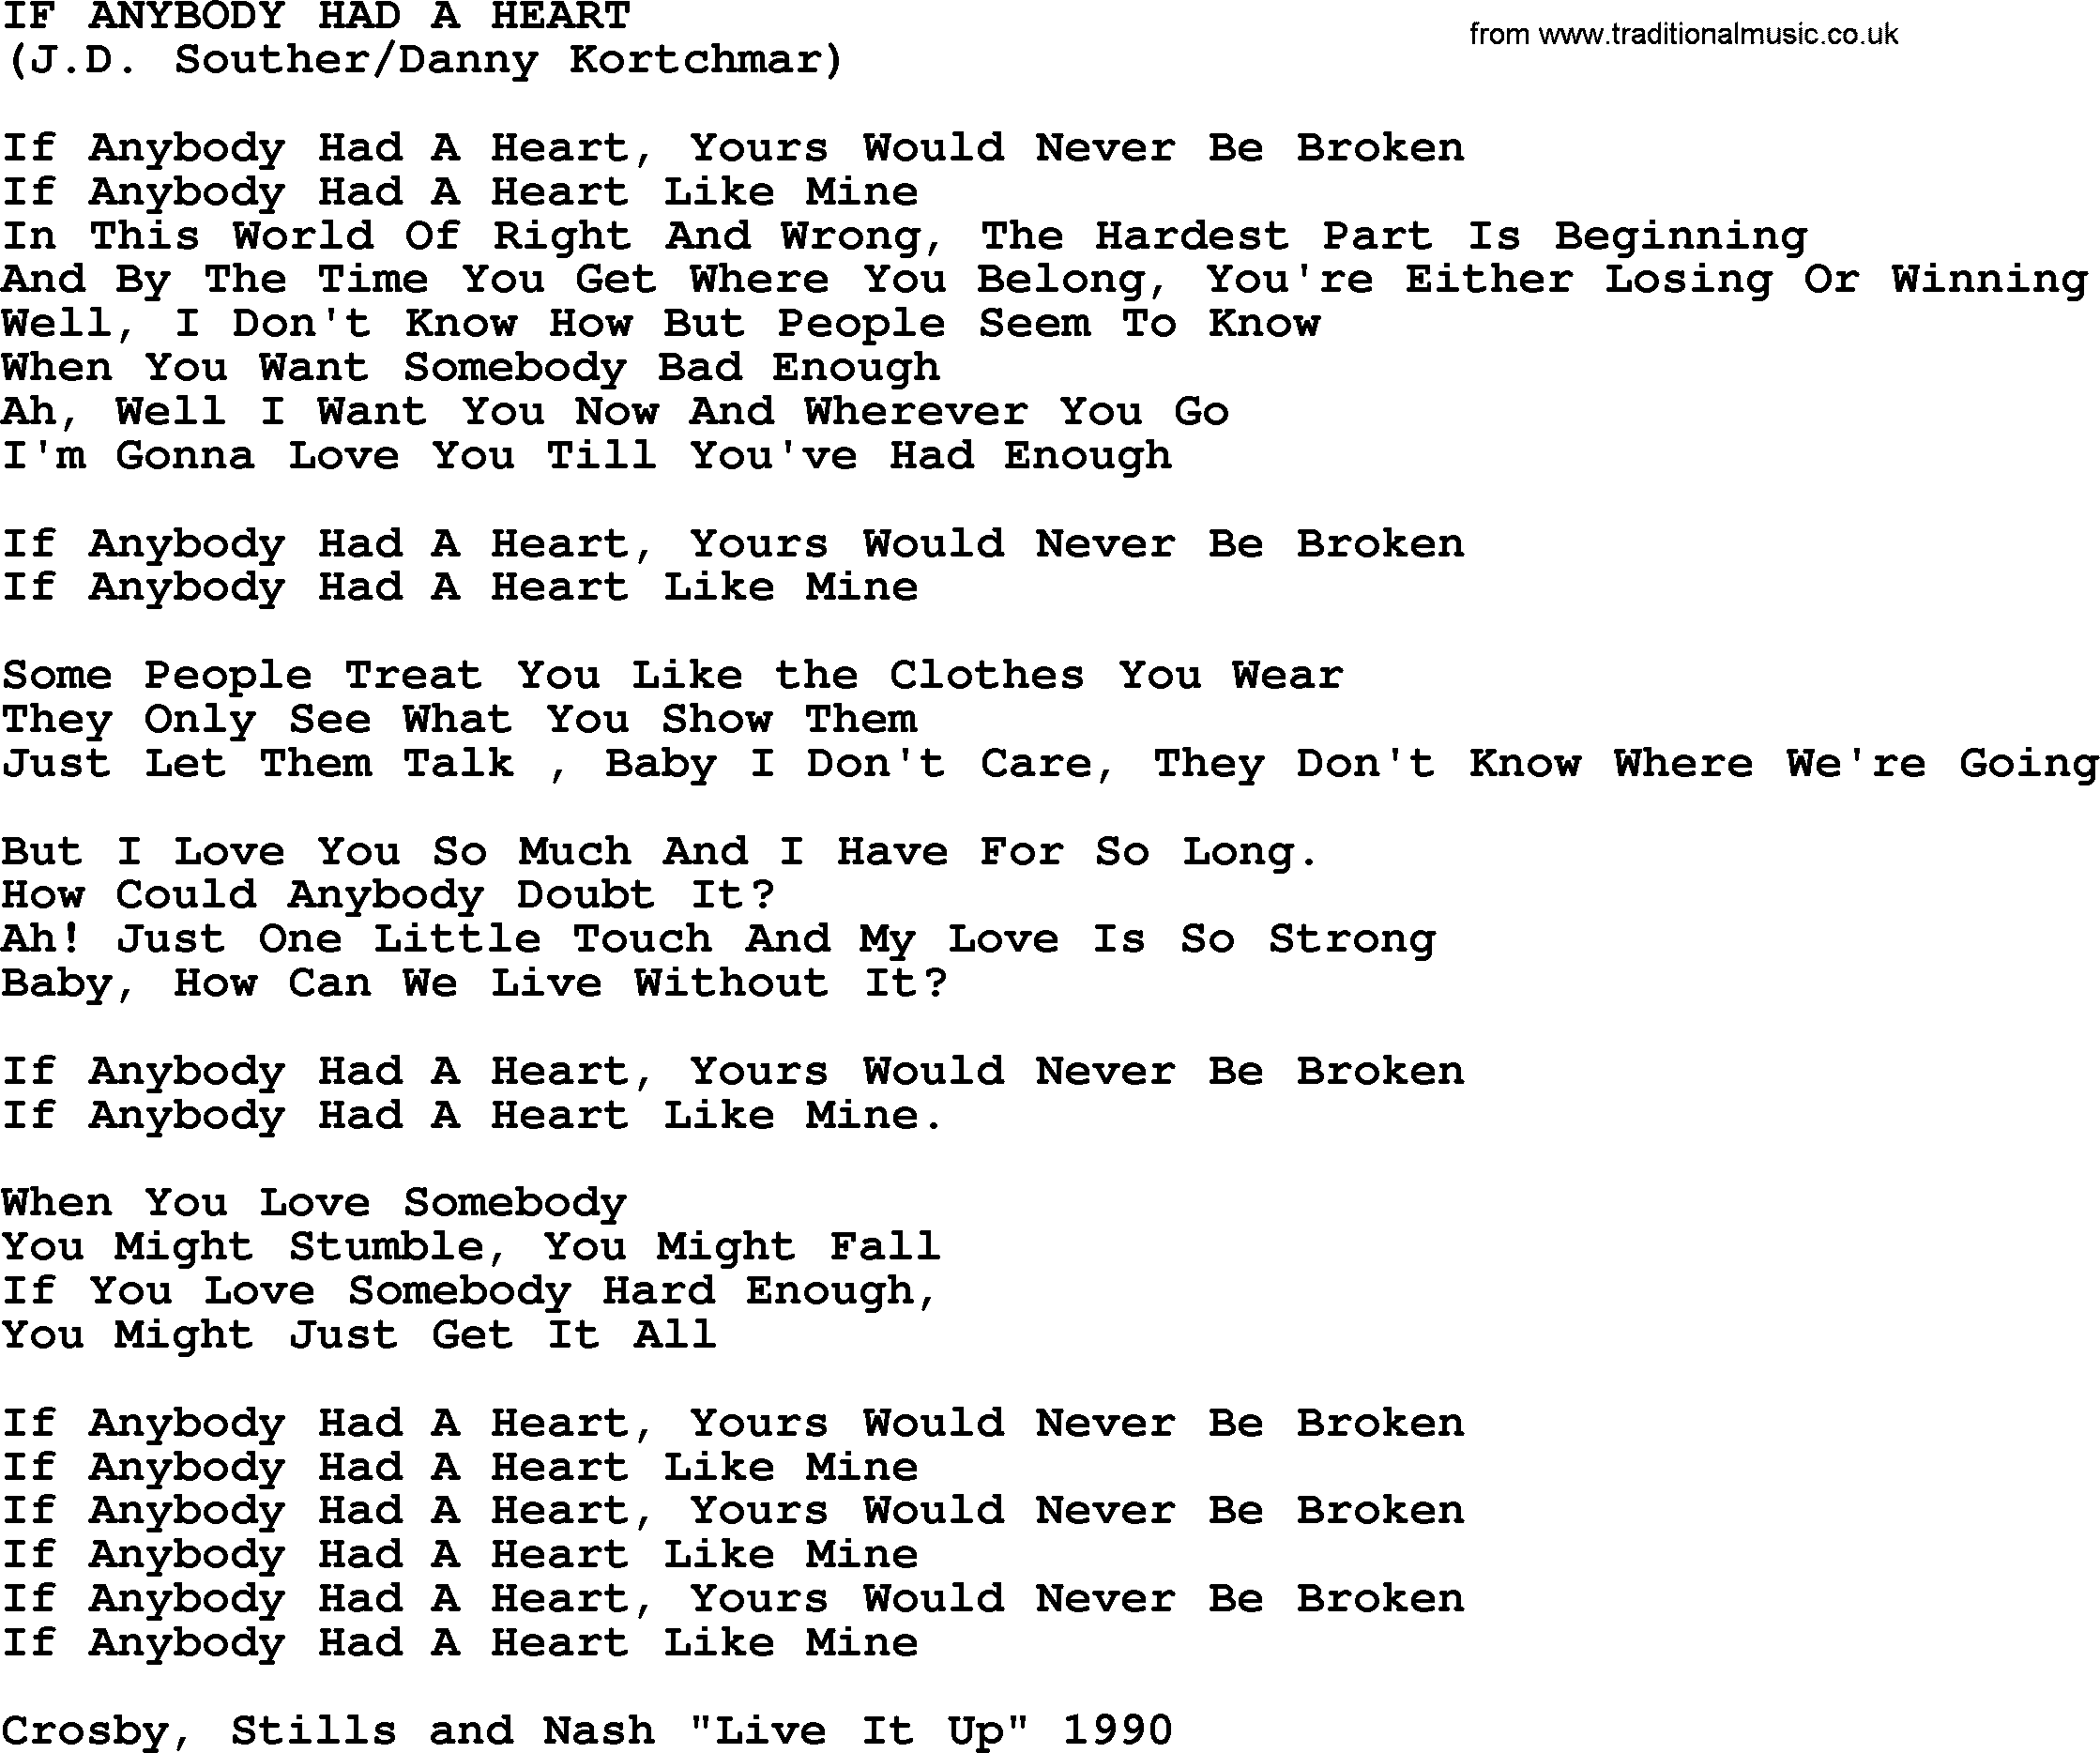 The Byrds song If Anybody Had A Heart, lyrics